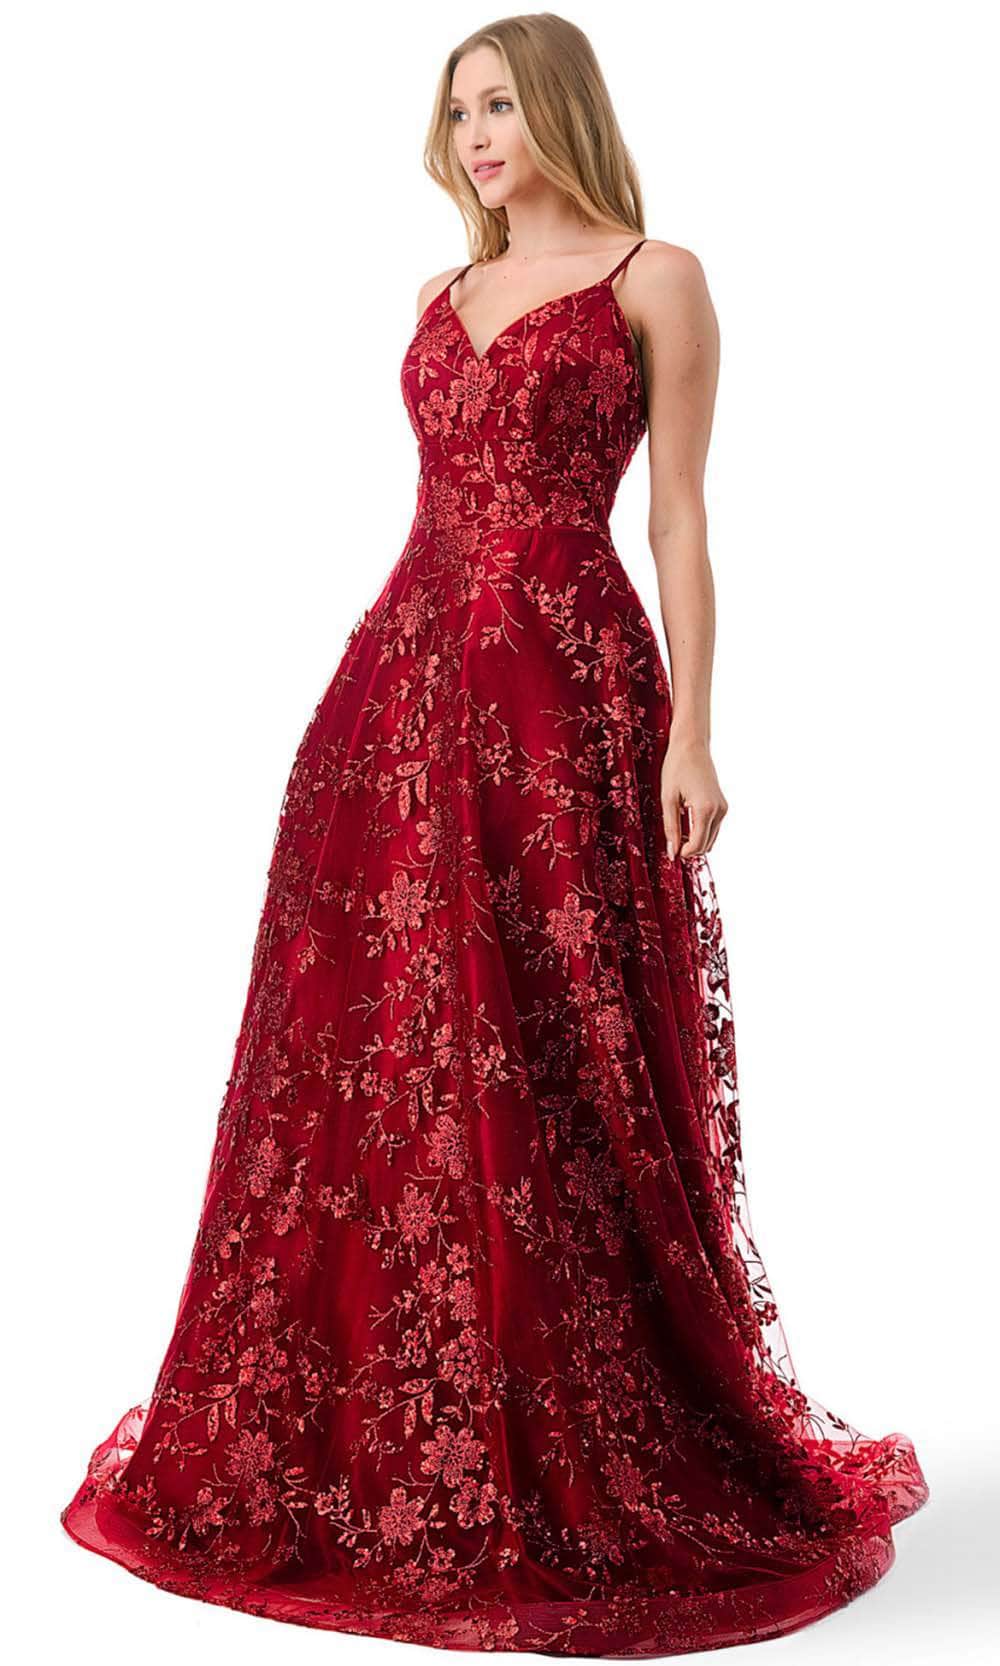 Aspeed Design L2764B - Floral Glitter Motif Prom Dress